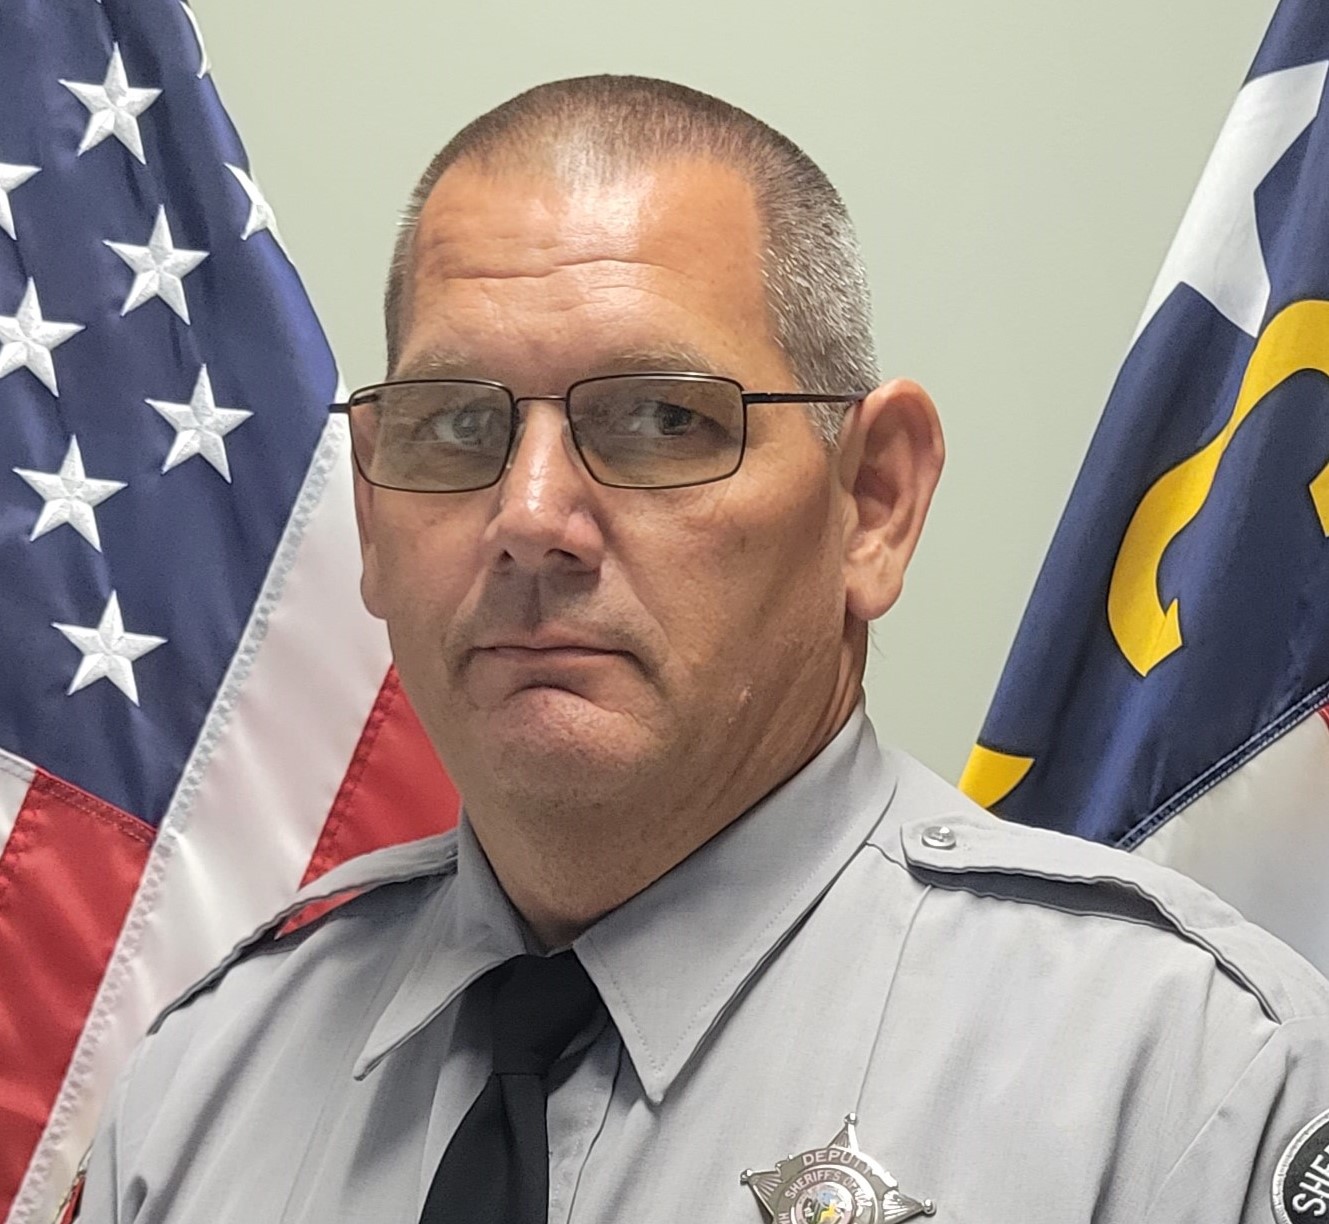 Harnett County mourns the loss of Deputy Sheriff Chris Johnson